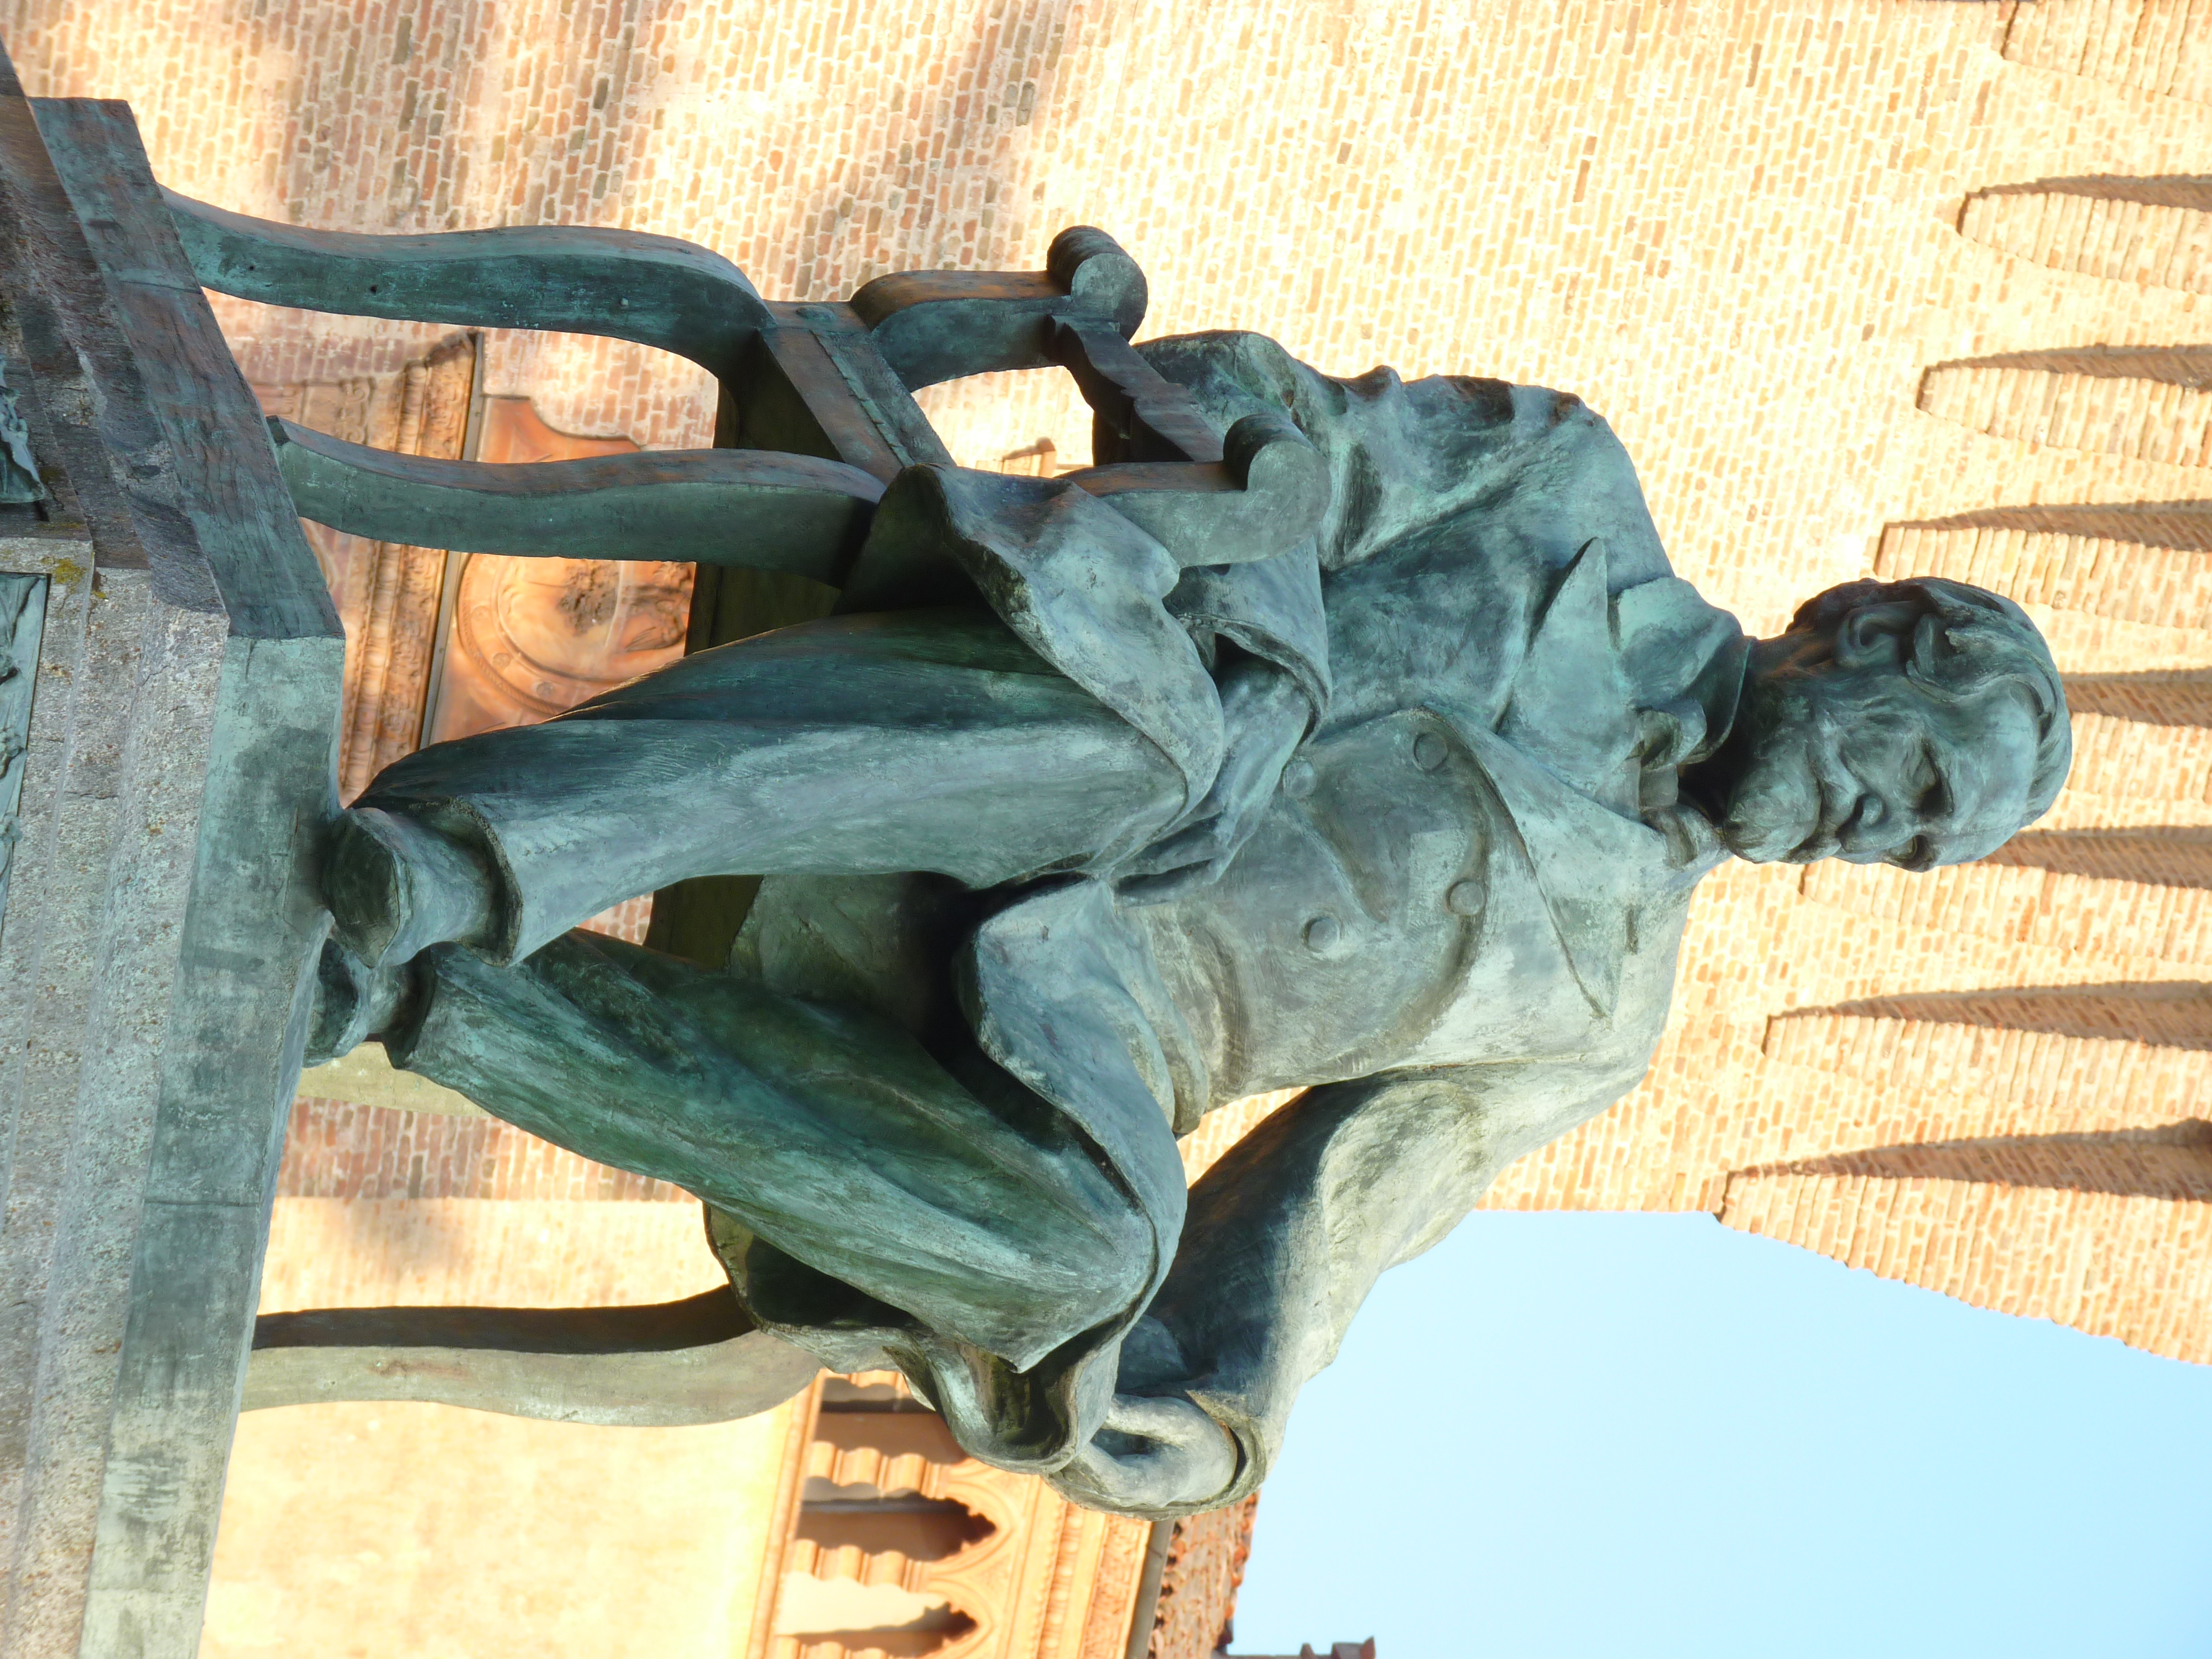 photo: https://upload.wikimedia.org/wikipedia/commons/6/6d/Monumento_Giuseppe_Verdi_-_Busseto.JPG